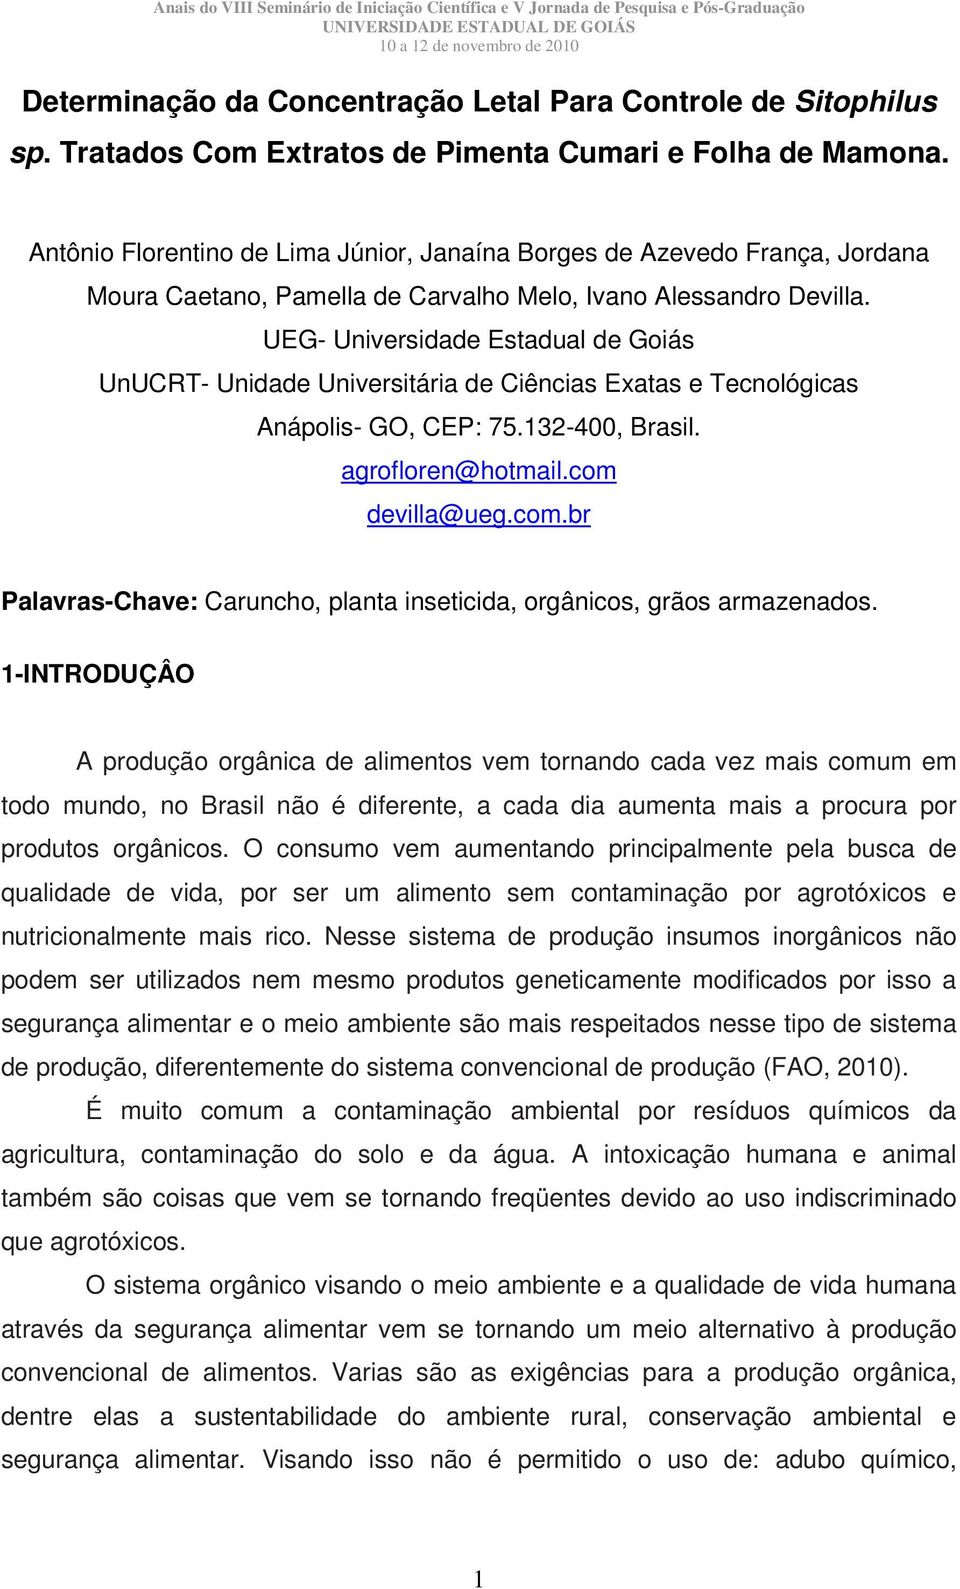 UEG- Universidade Estadual de Goiás UnUCRT- Unidade Universitária de Ciências Exatas e Tecnológicas Anápolis- GO, CEP: 75.132-400, Brasil. agrofloren@hotmail.com 